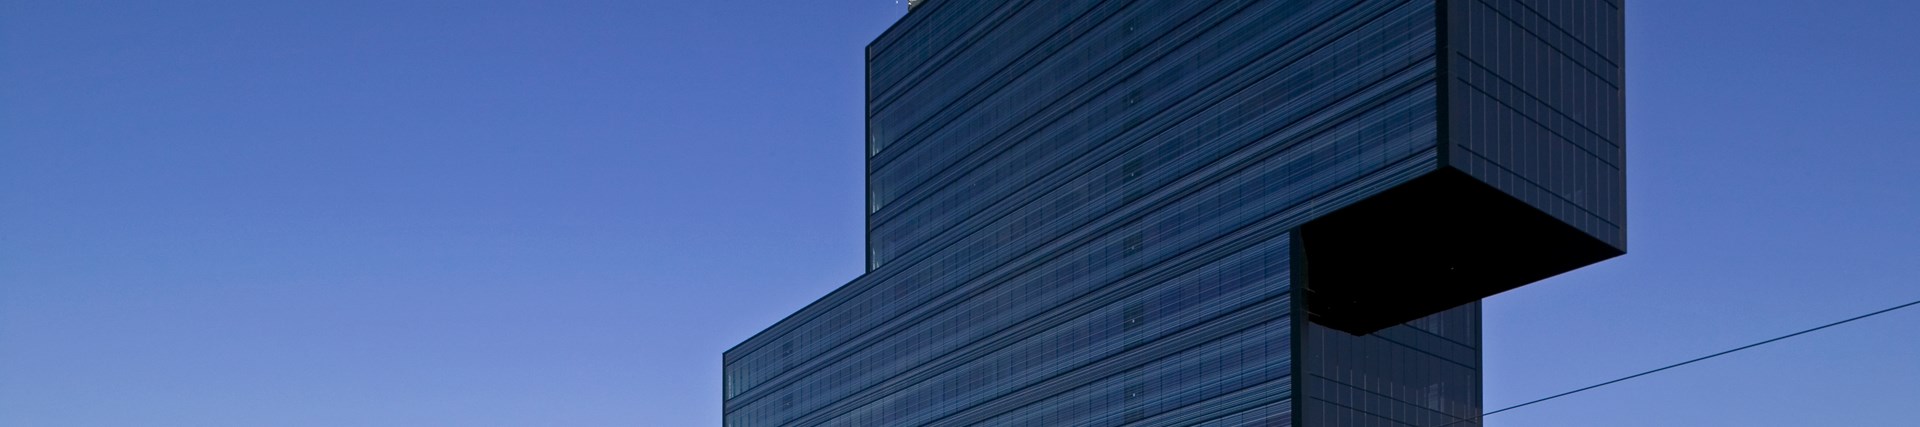 Edificio de oficinas Diagonal 123